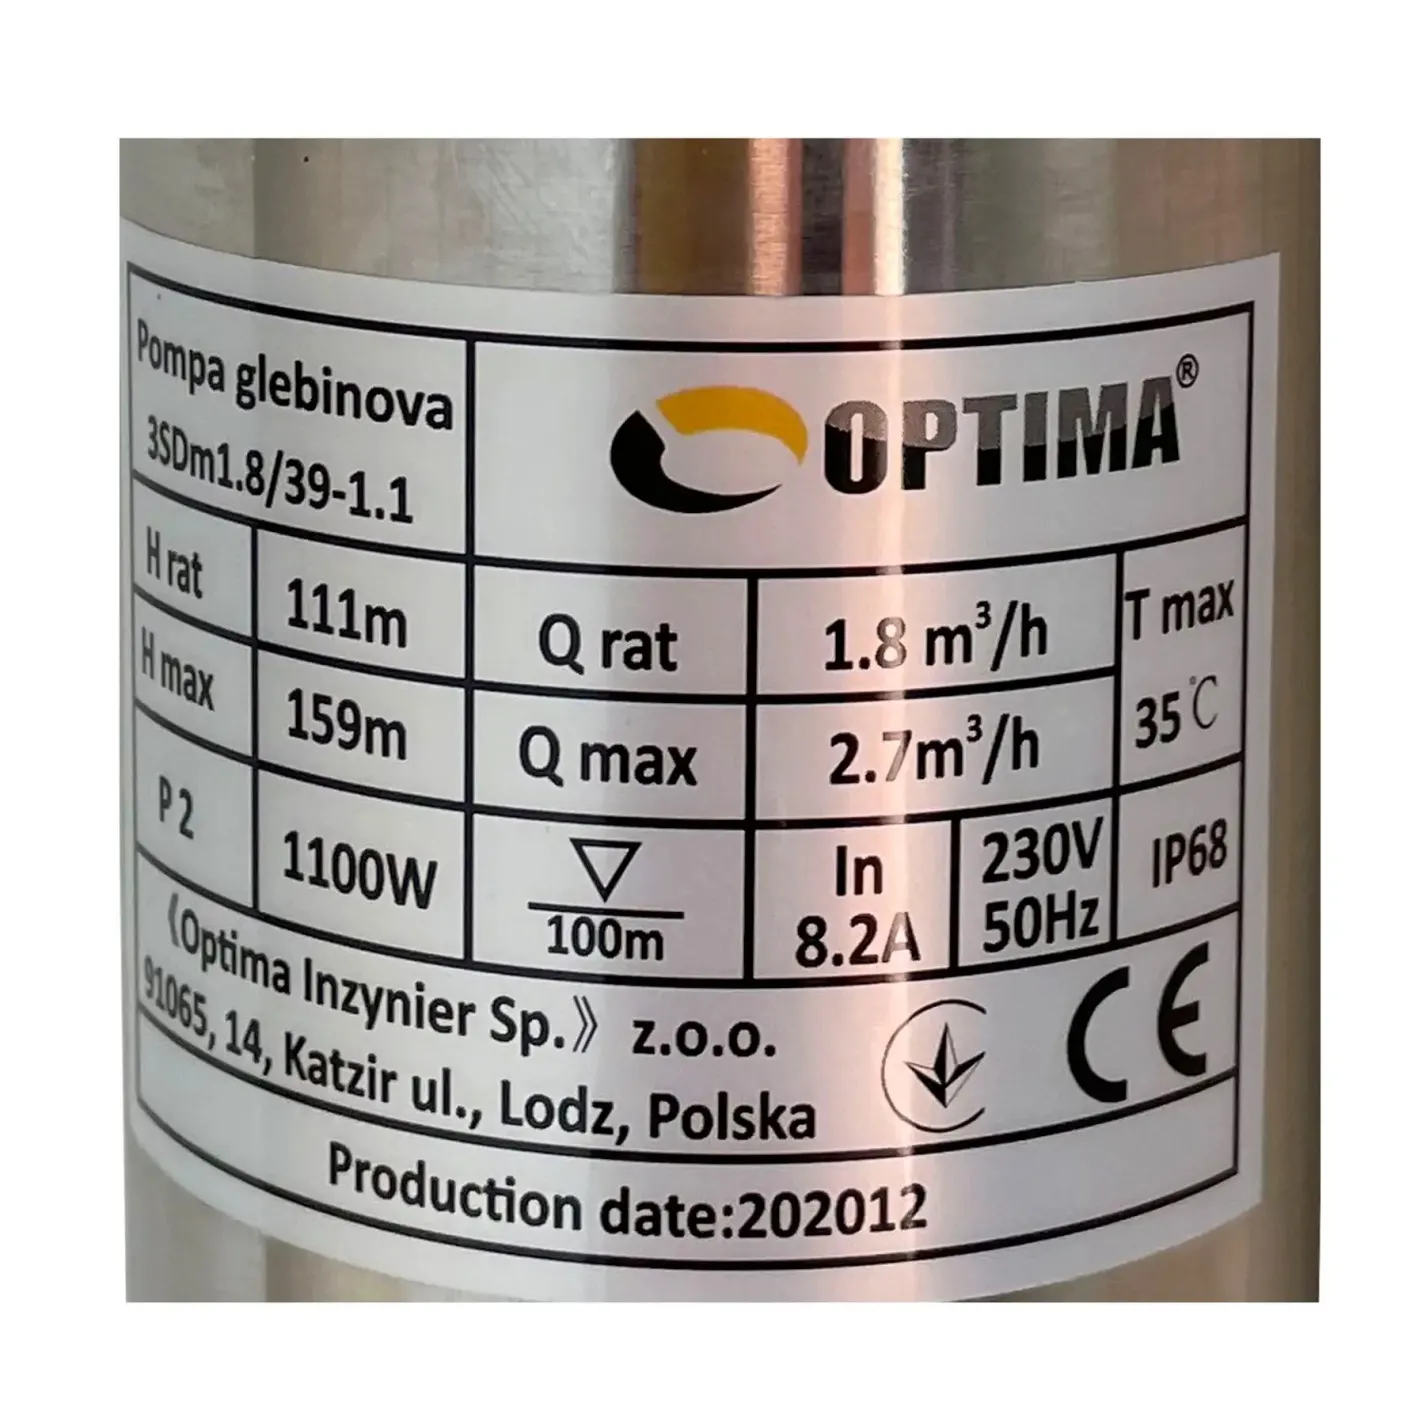 Скважинный насос Optima 3SDm1,8/39 1,1 кВт 159м + пульт + кабель 1,5м - Фото 1